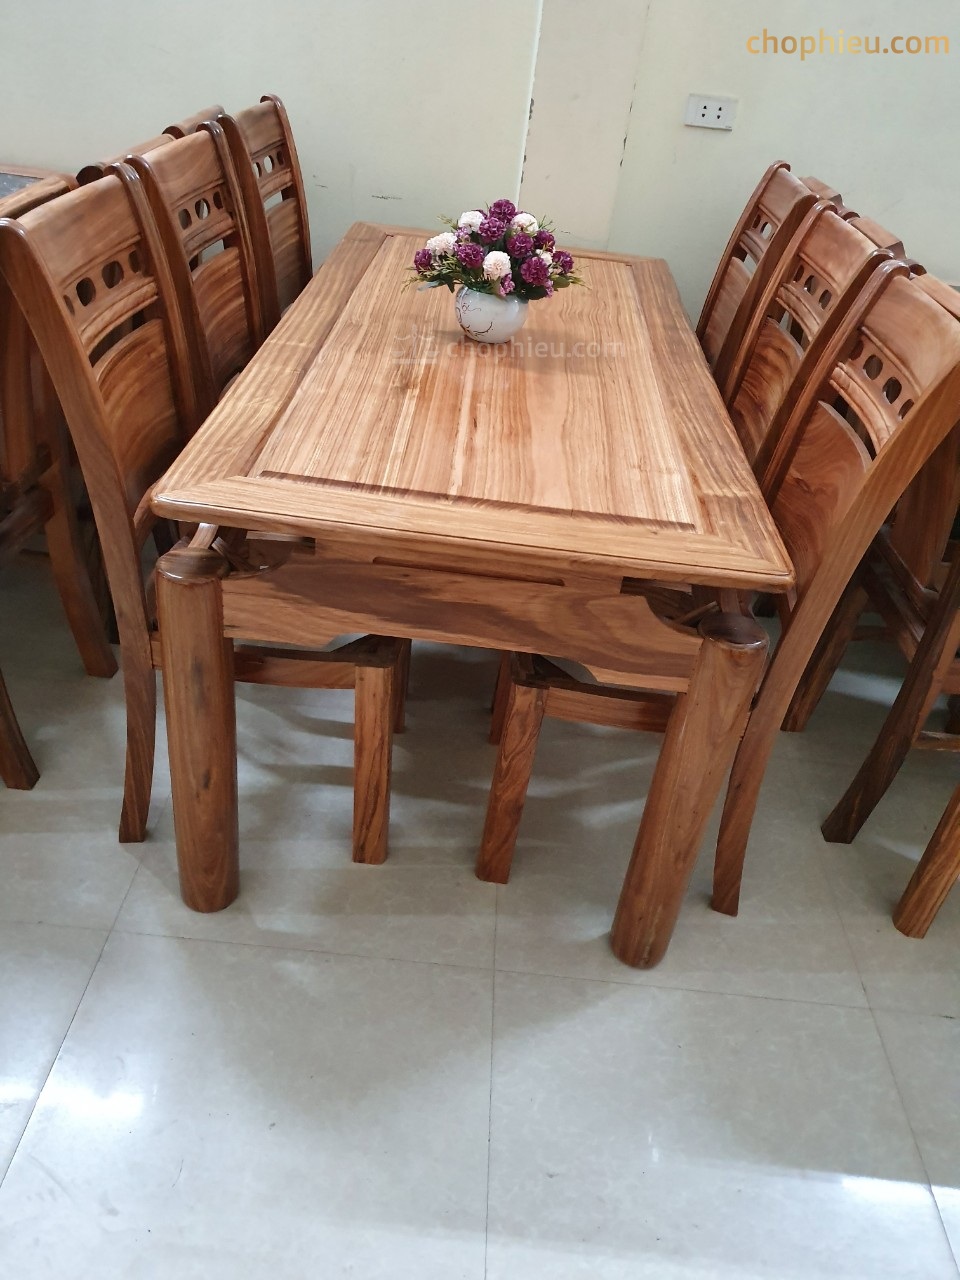 Bộ bàn ăn gỗ hương đá 8 ghế Hồng Hạc:
Bộ bàn ăn gỗ hương đá 8 ghế Hồng Hạc là sản phẩm hiếm có và được nhiều người yêu thích trong năm